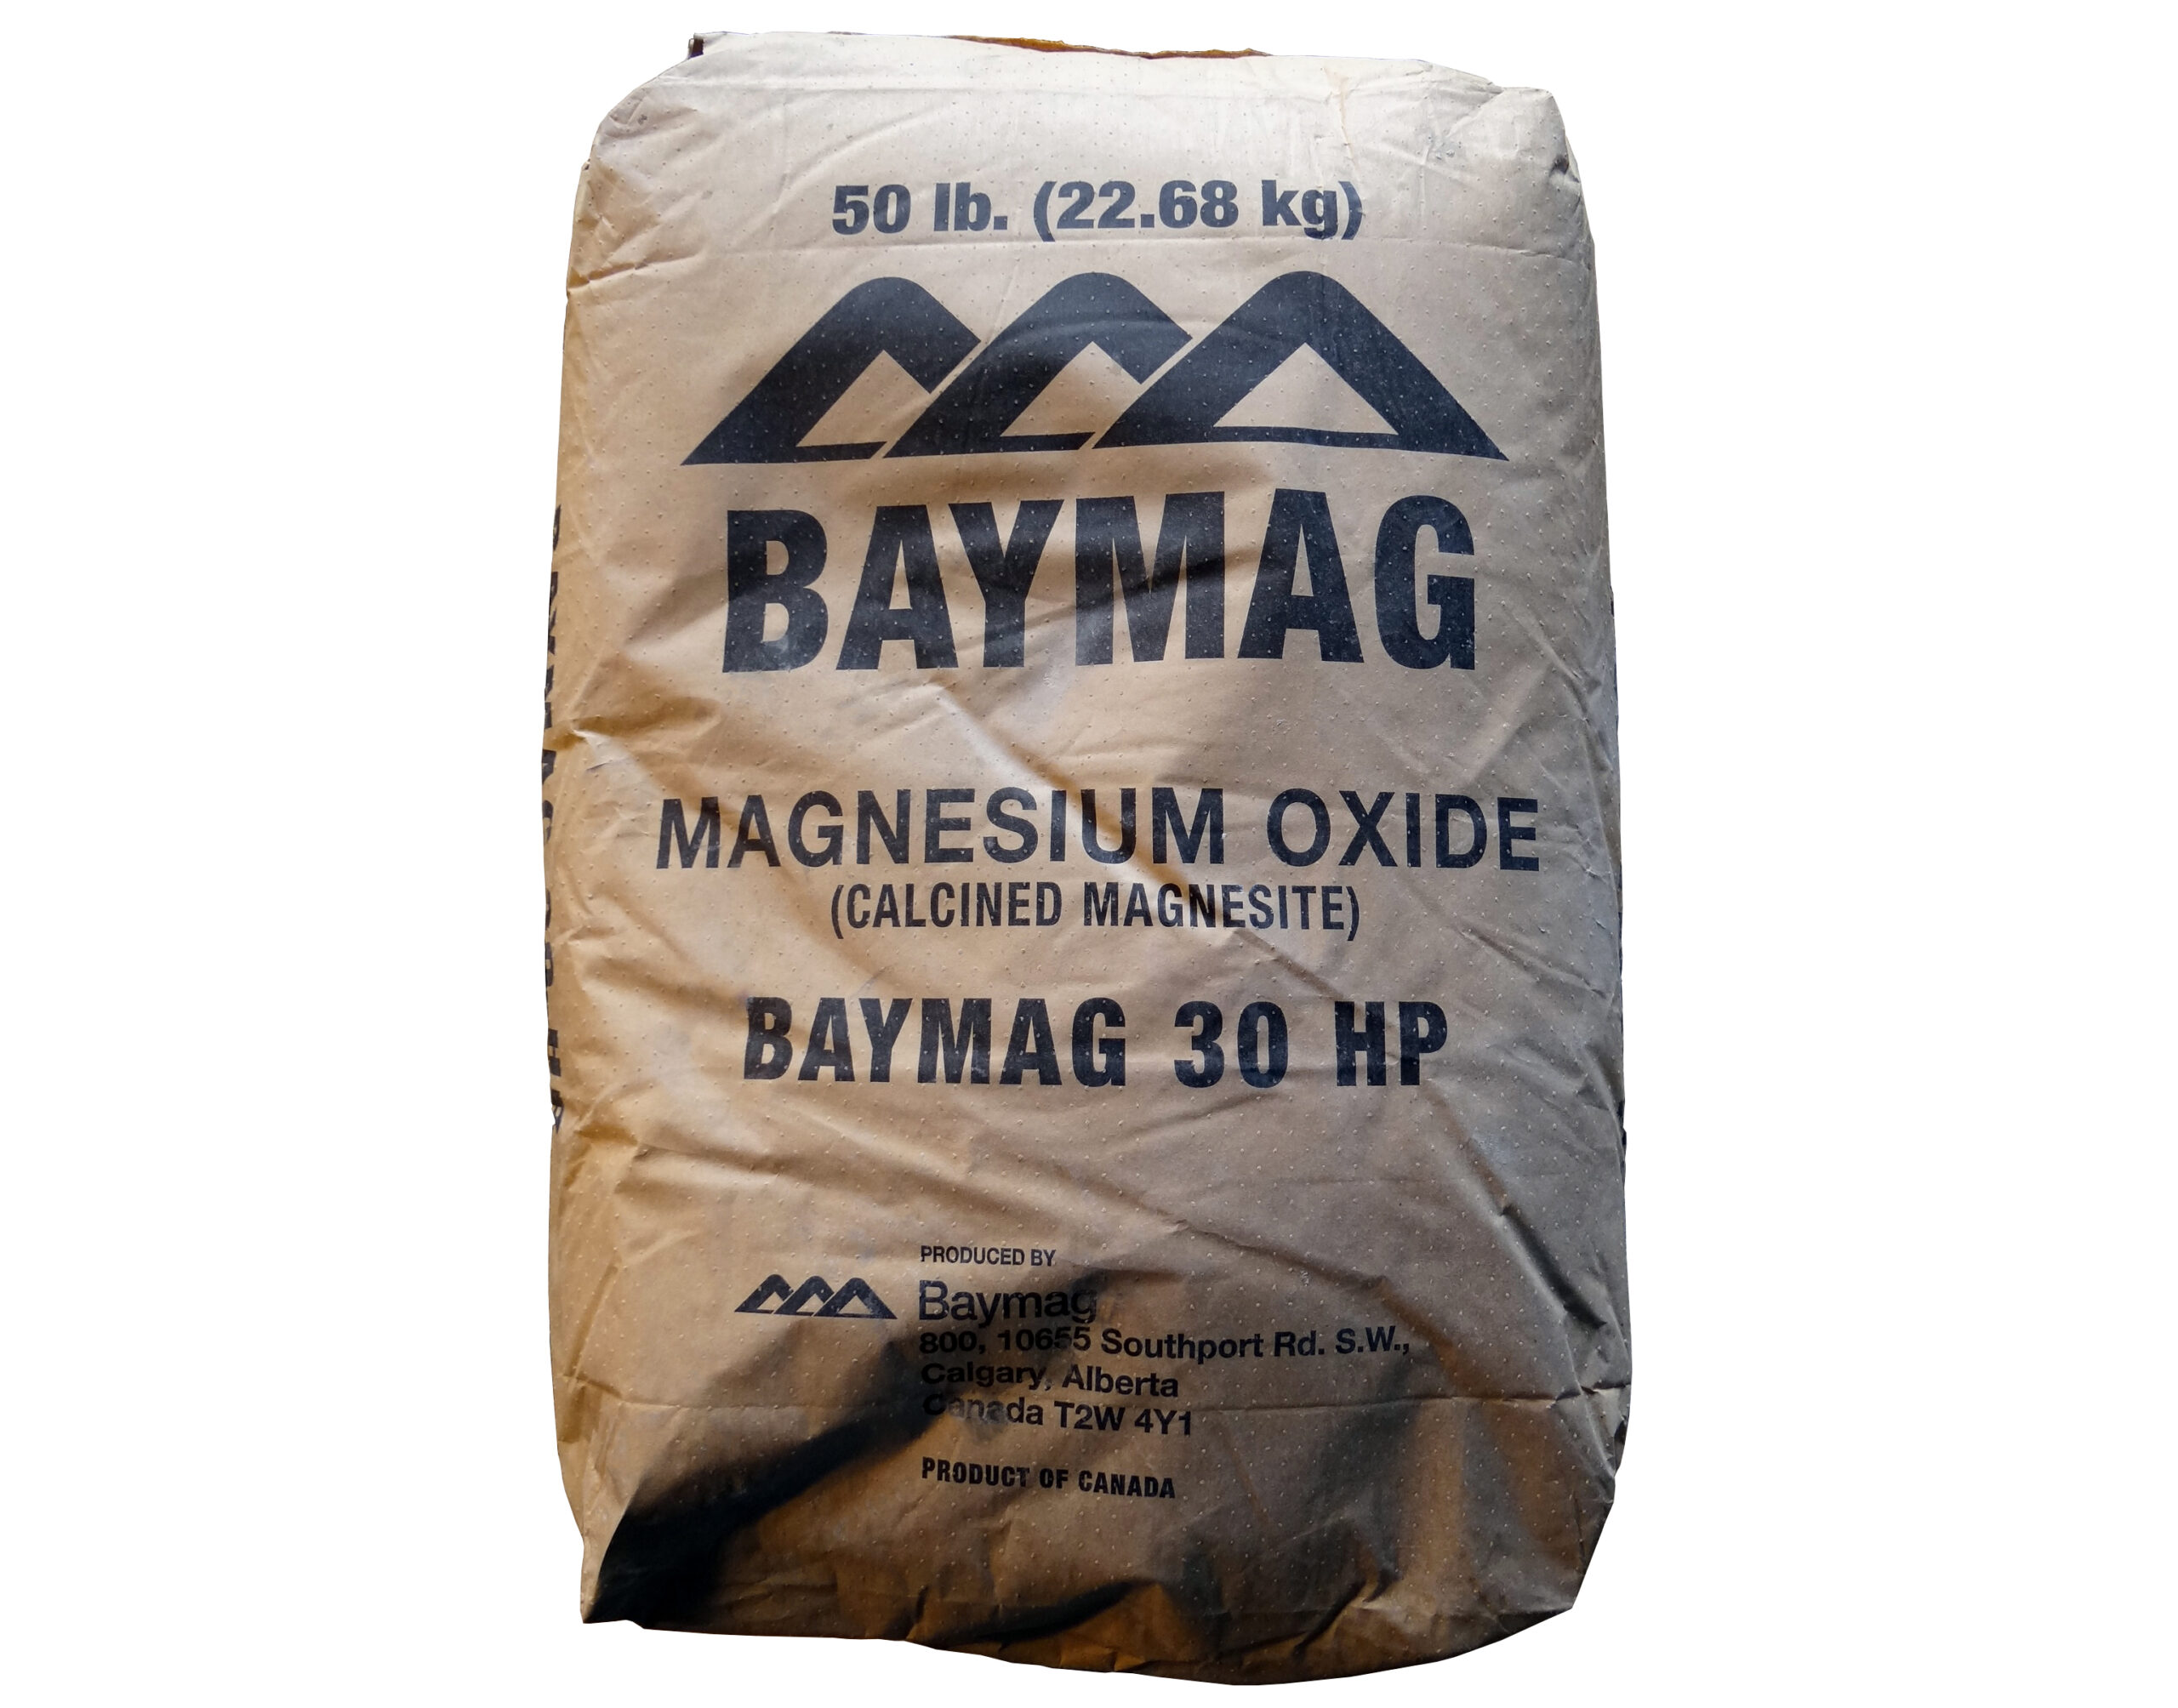 a sack of magnesium oxide